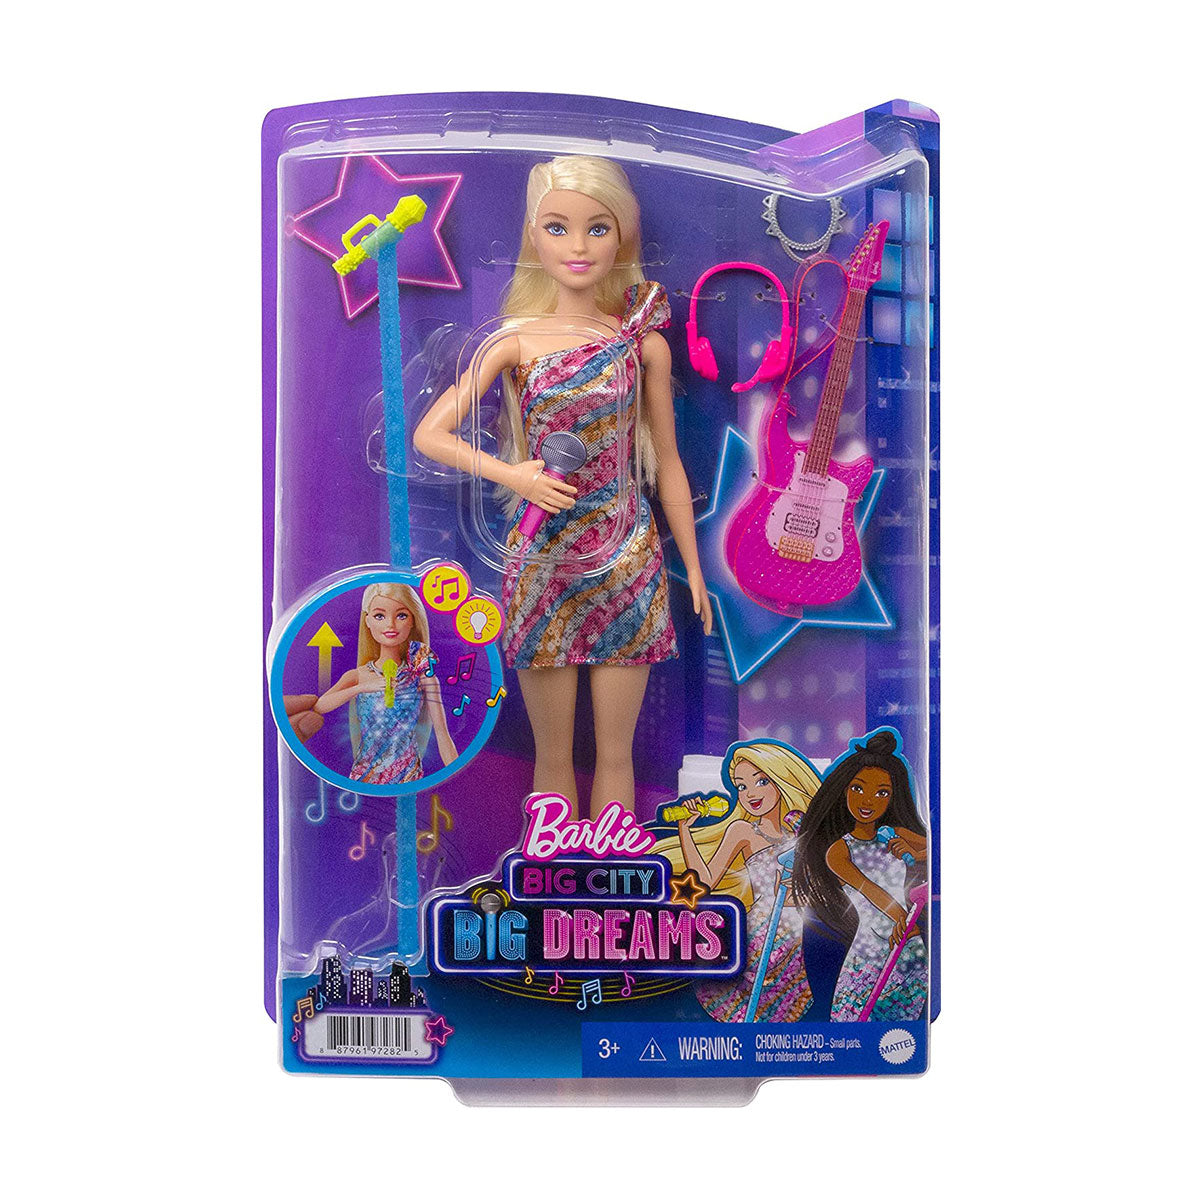 Barbie - Big City Big Dreams Malibu Doll